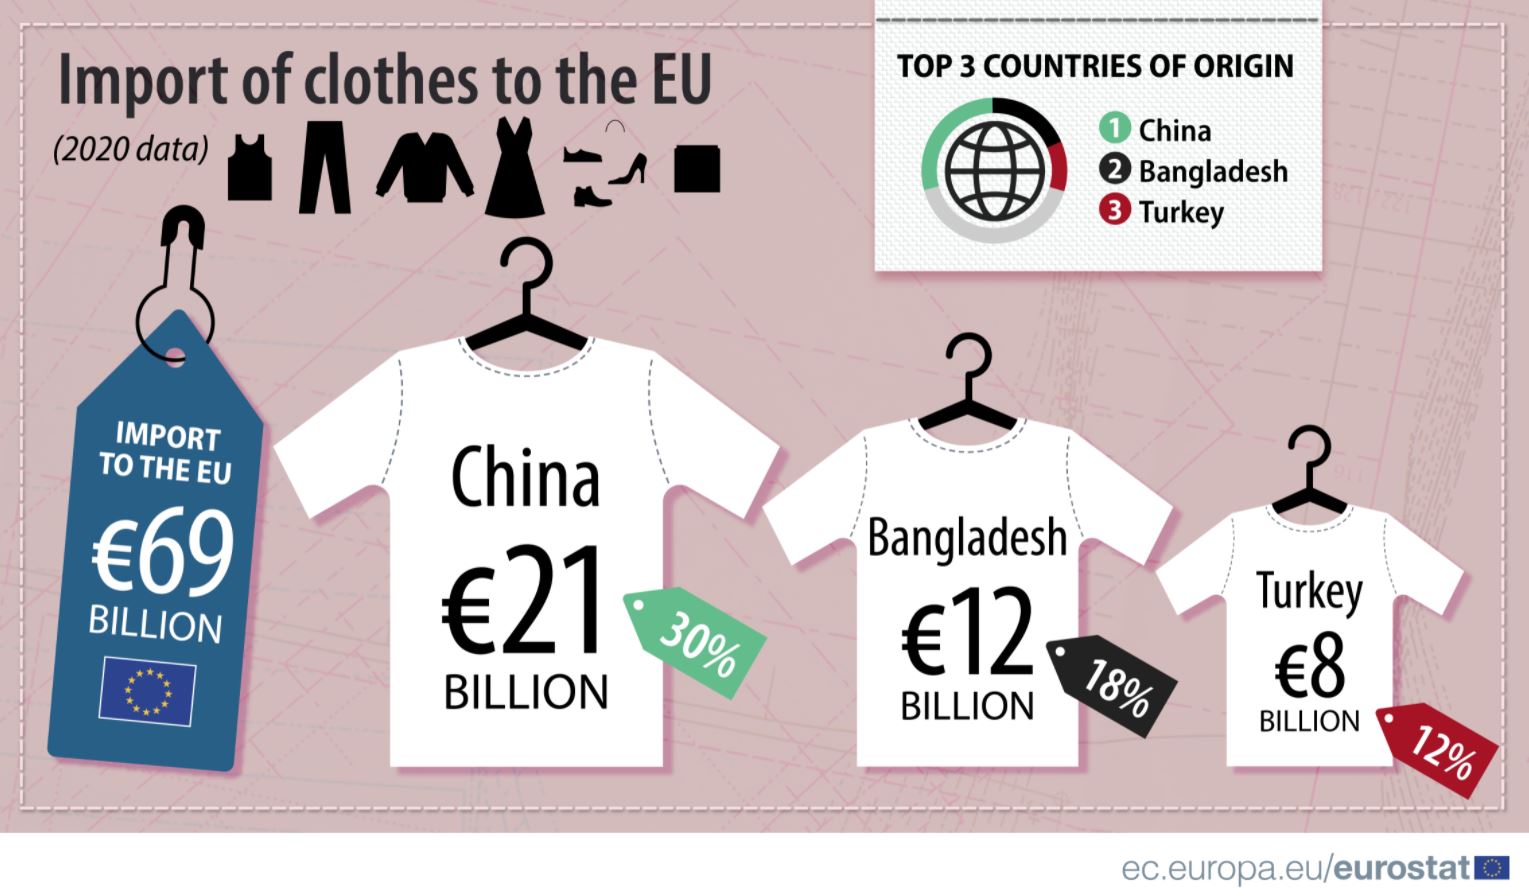 Nemačka najveći uvoznik odeće u EU, Italija najveći izvoznik 3